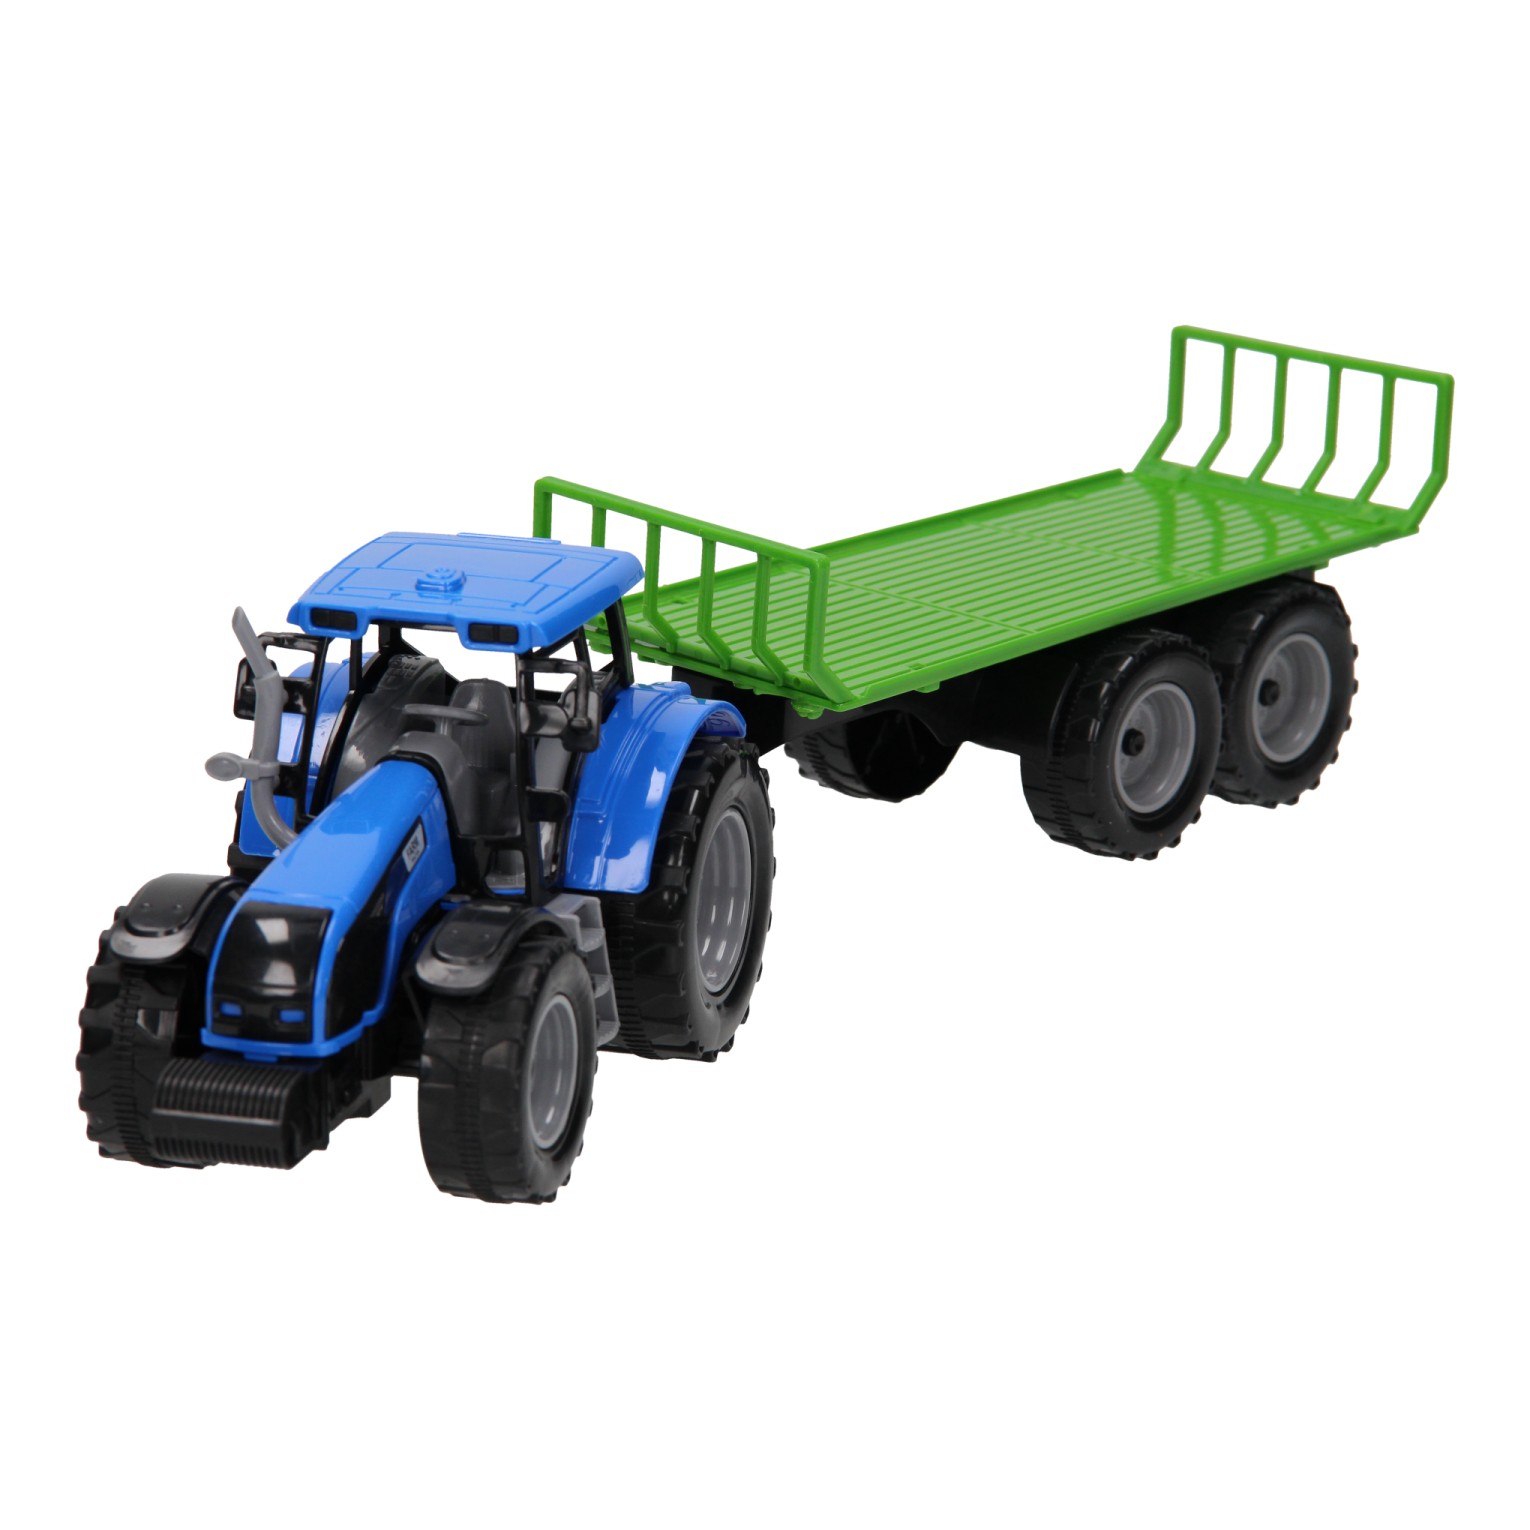 Traktor mit Flachwagen 1:32